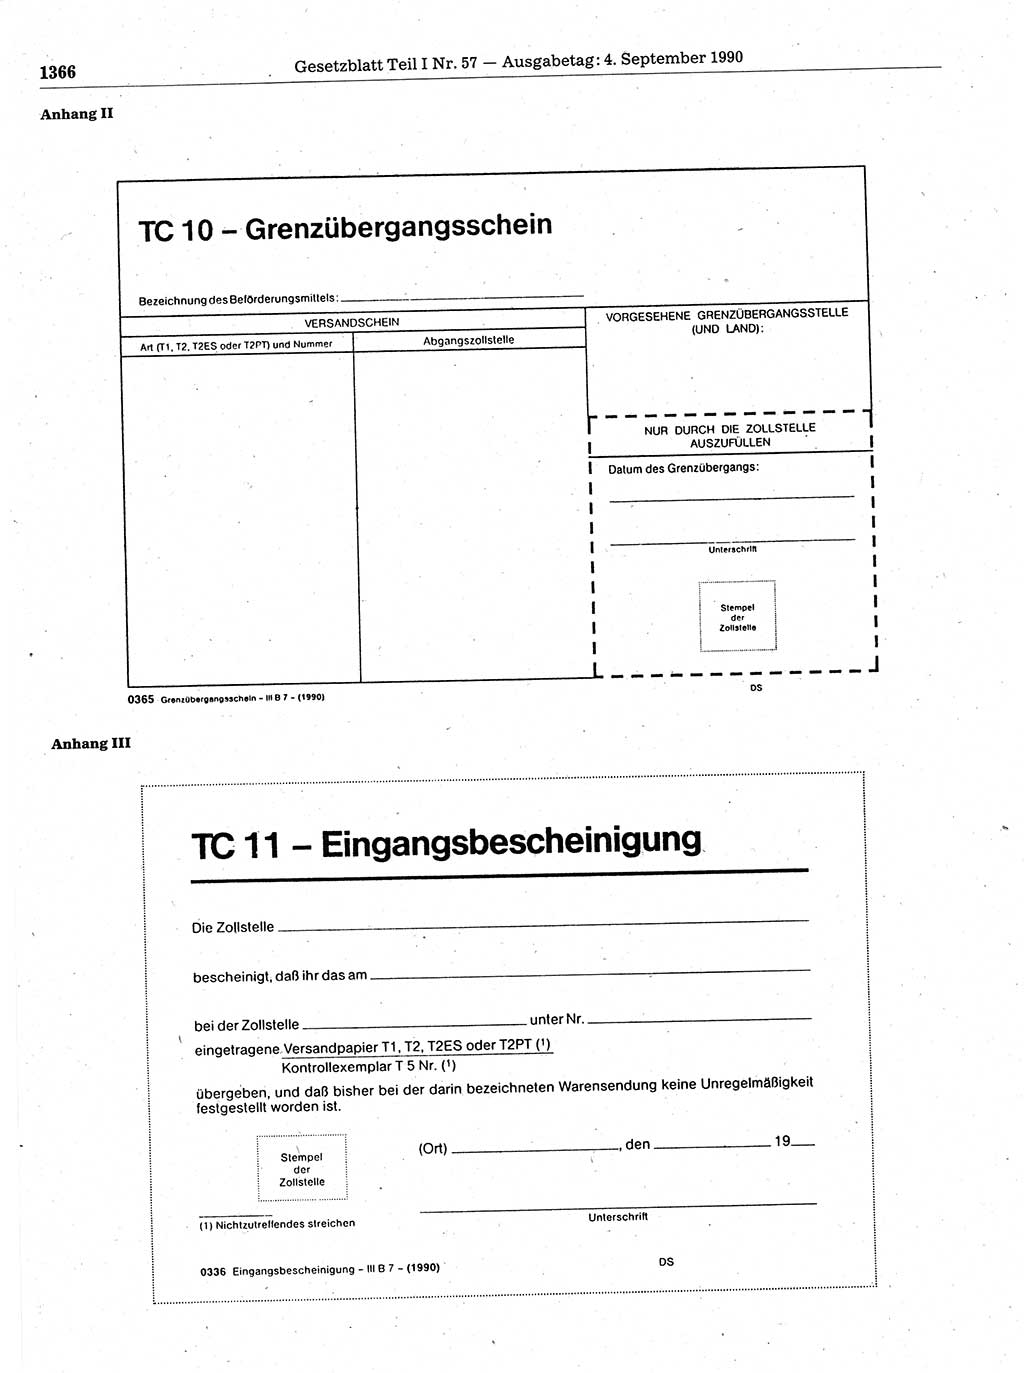 Gesetzblatt (GBl.) der Deutschen Demokratischen Republik (DDR) Teil Ⅰ 1990, Seite 1366 (GBl. DDR Ⅰ 1990, S. 1366)